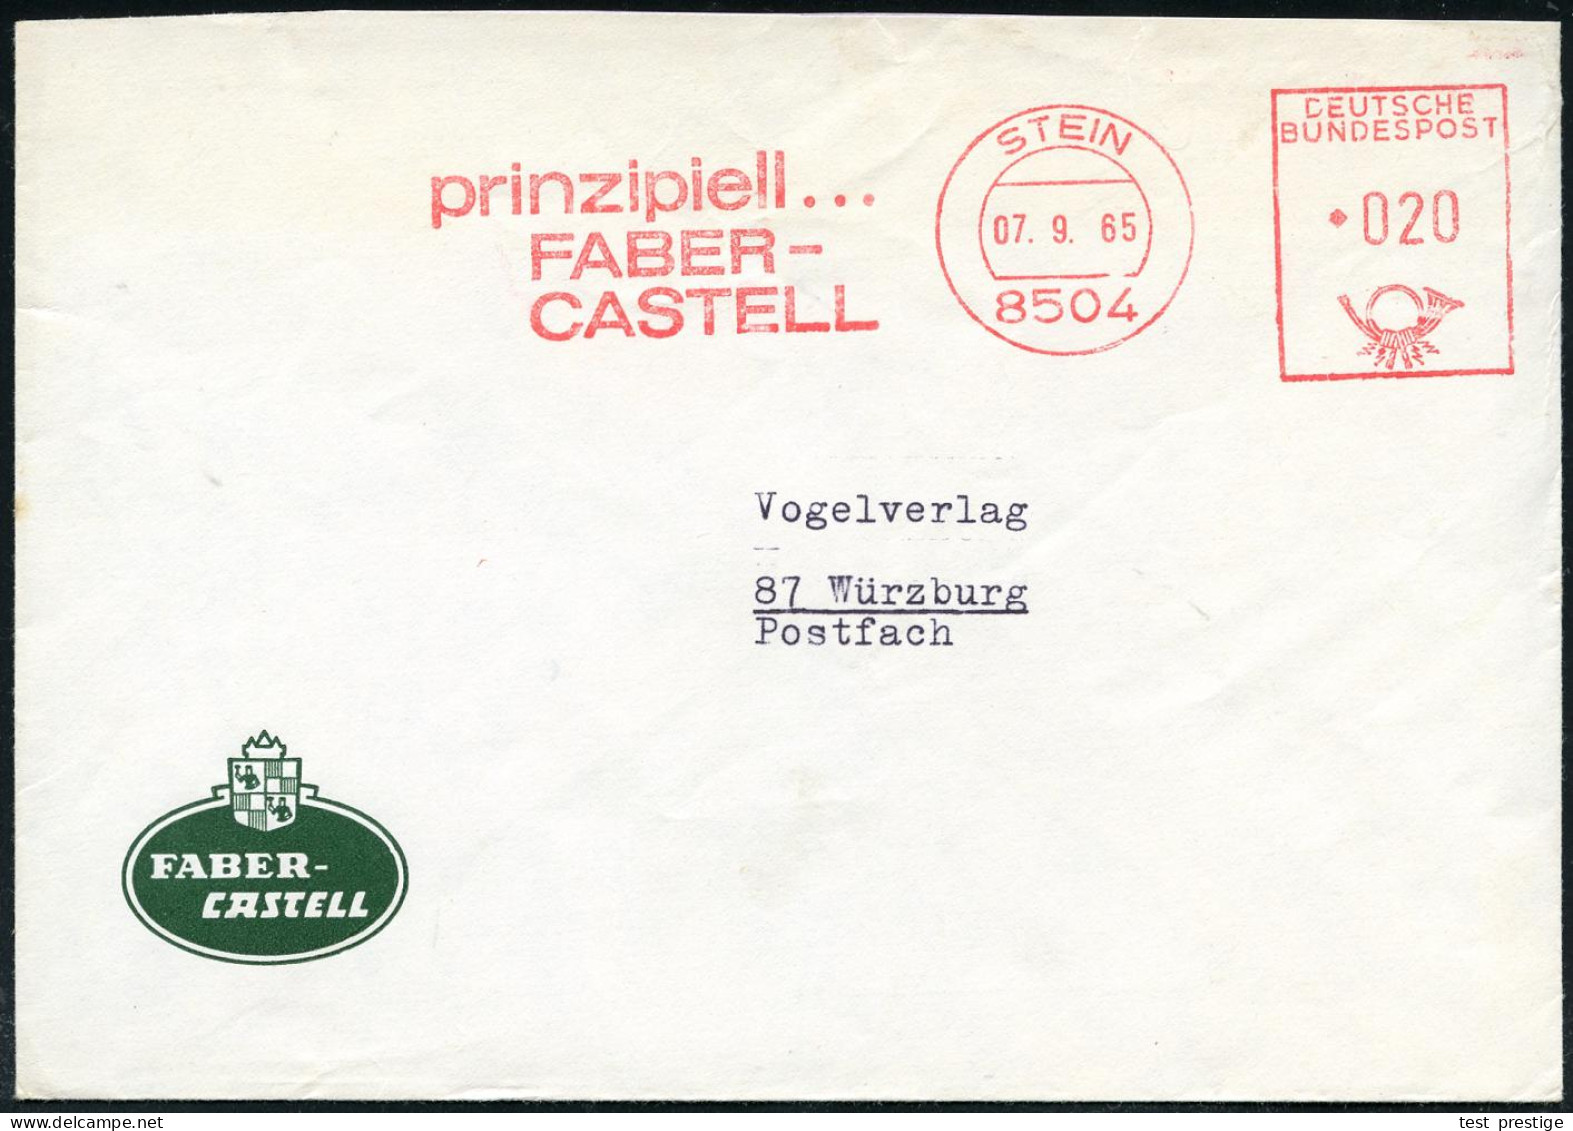 8504 STEIN/ Prinzipiell.../ FABER/ CASTELL 1985 (7.9.) AFS Francotyp Auf Firmen-Bf. Mit Firmen-Logo (Dü.E-26) - KUNSTTEC - Other